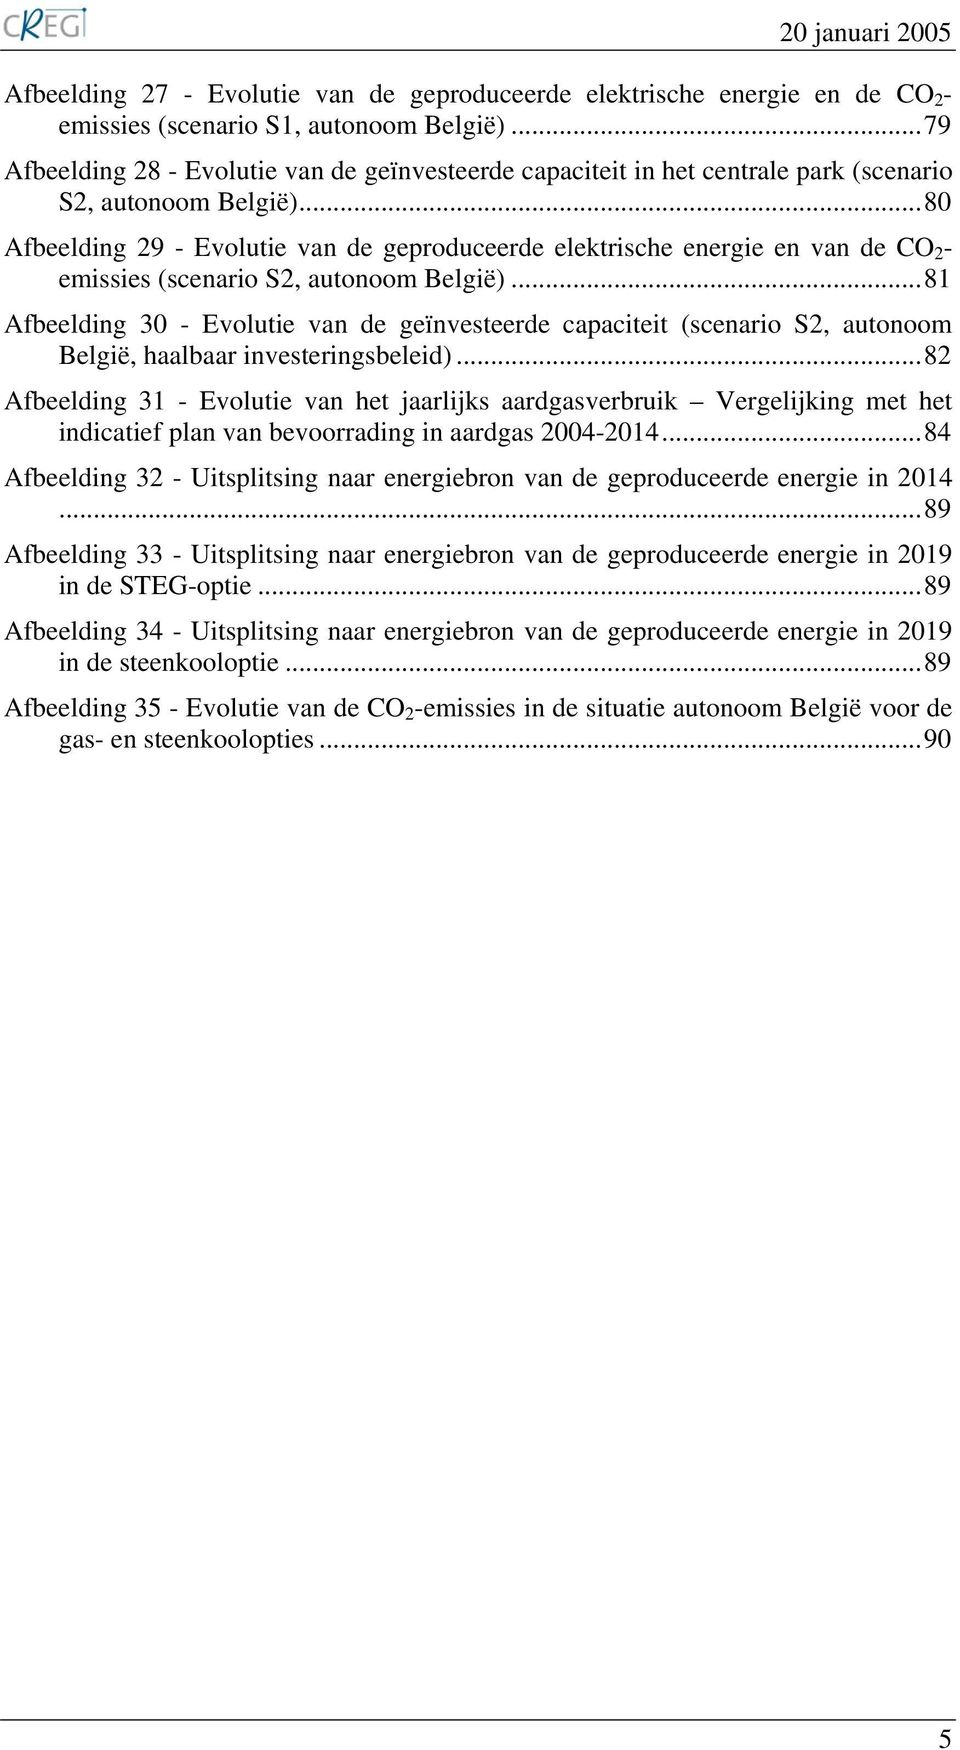 ..80 Afbeelding 29 - Evolutie van de geproduceerde elektrische energie en van de CO2- emissies (scenario S2, autonoom België).